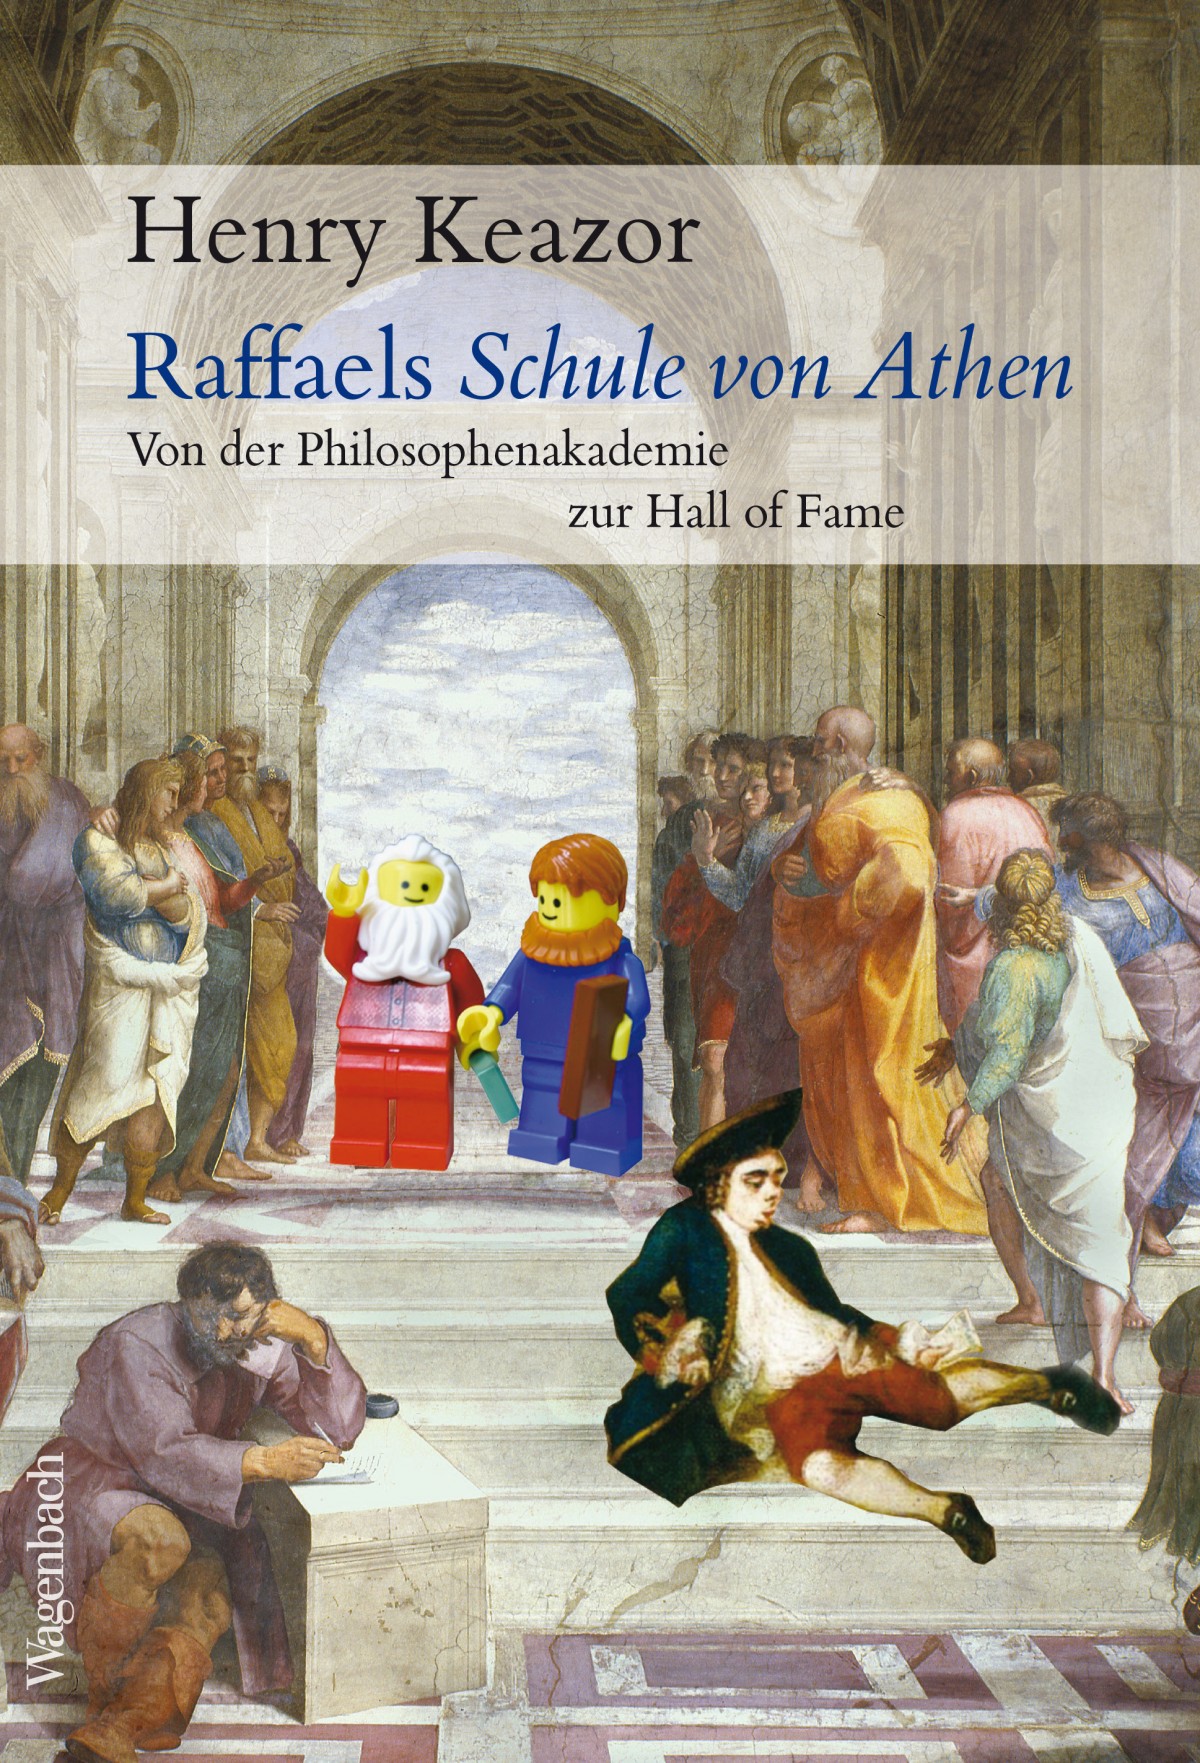 Henry Keazor: Raffaels Schule von Athen. Von der Philosophenakademie zur Hall of Fame